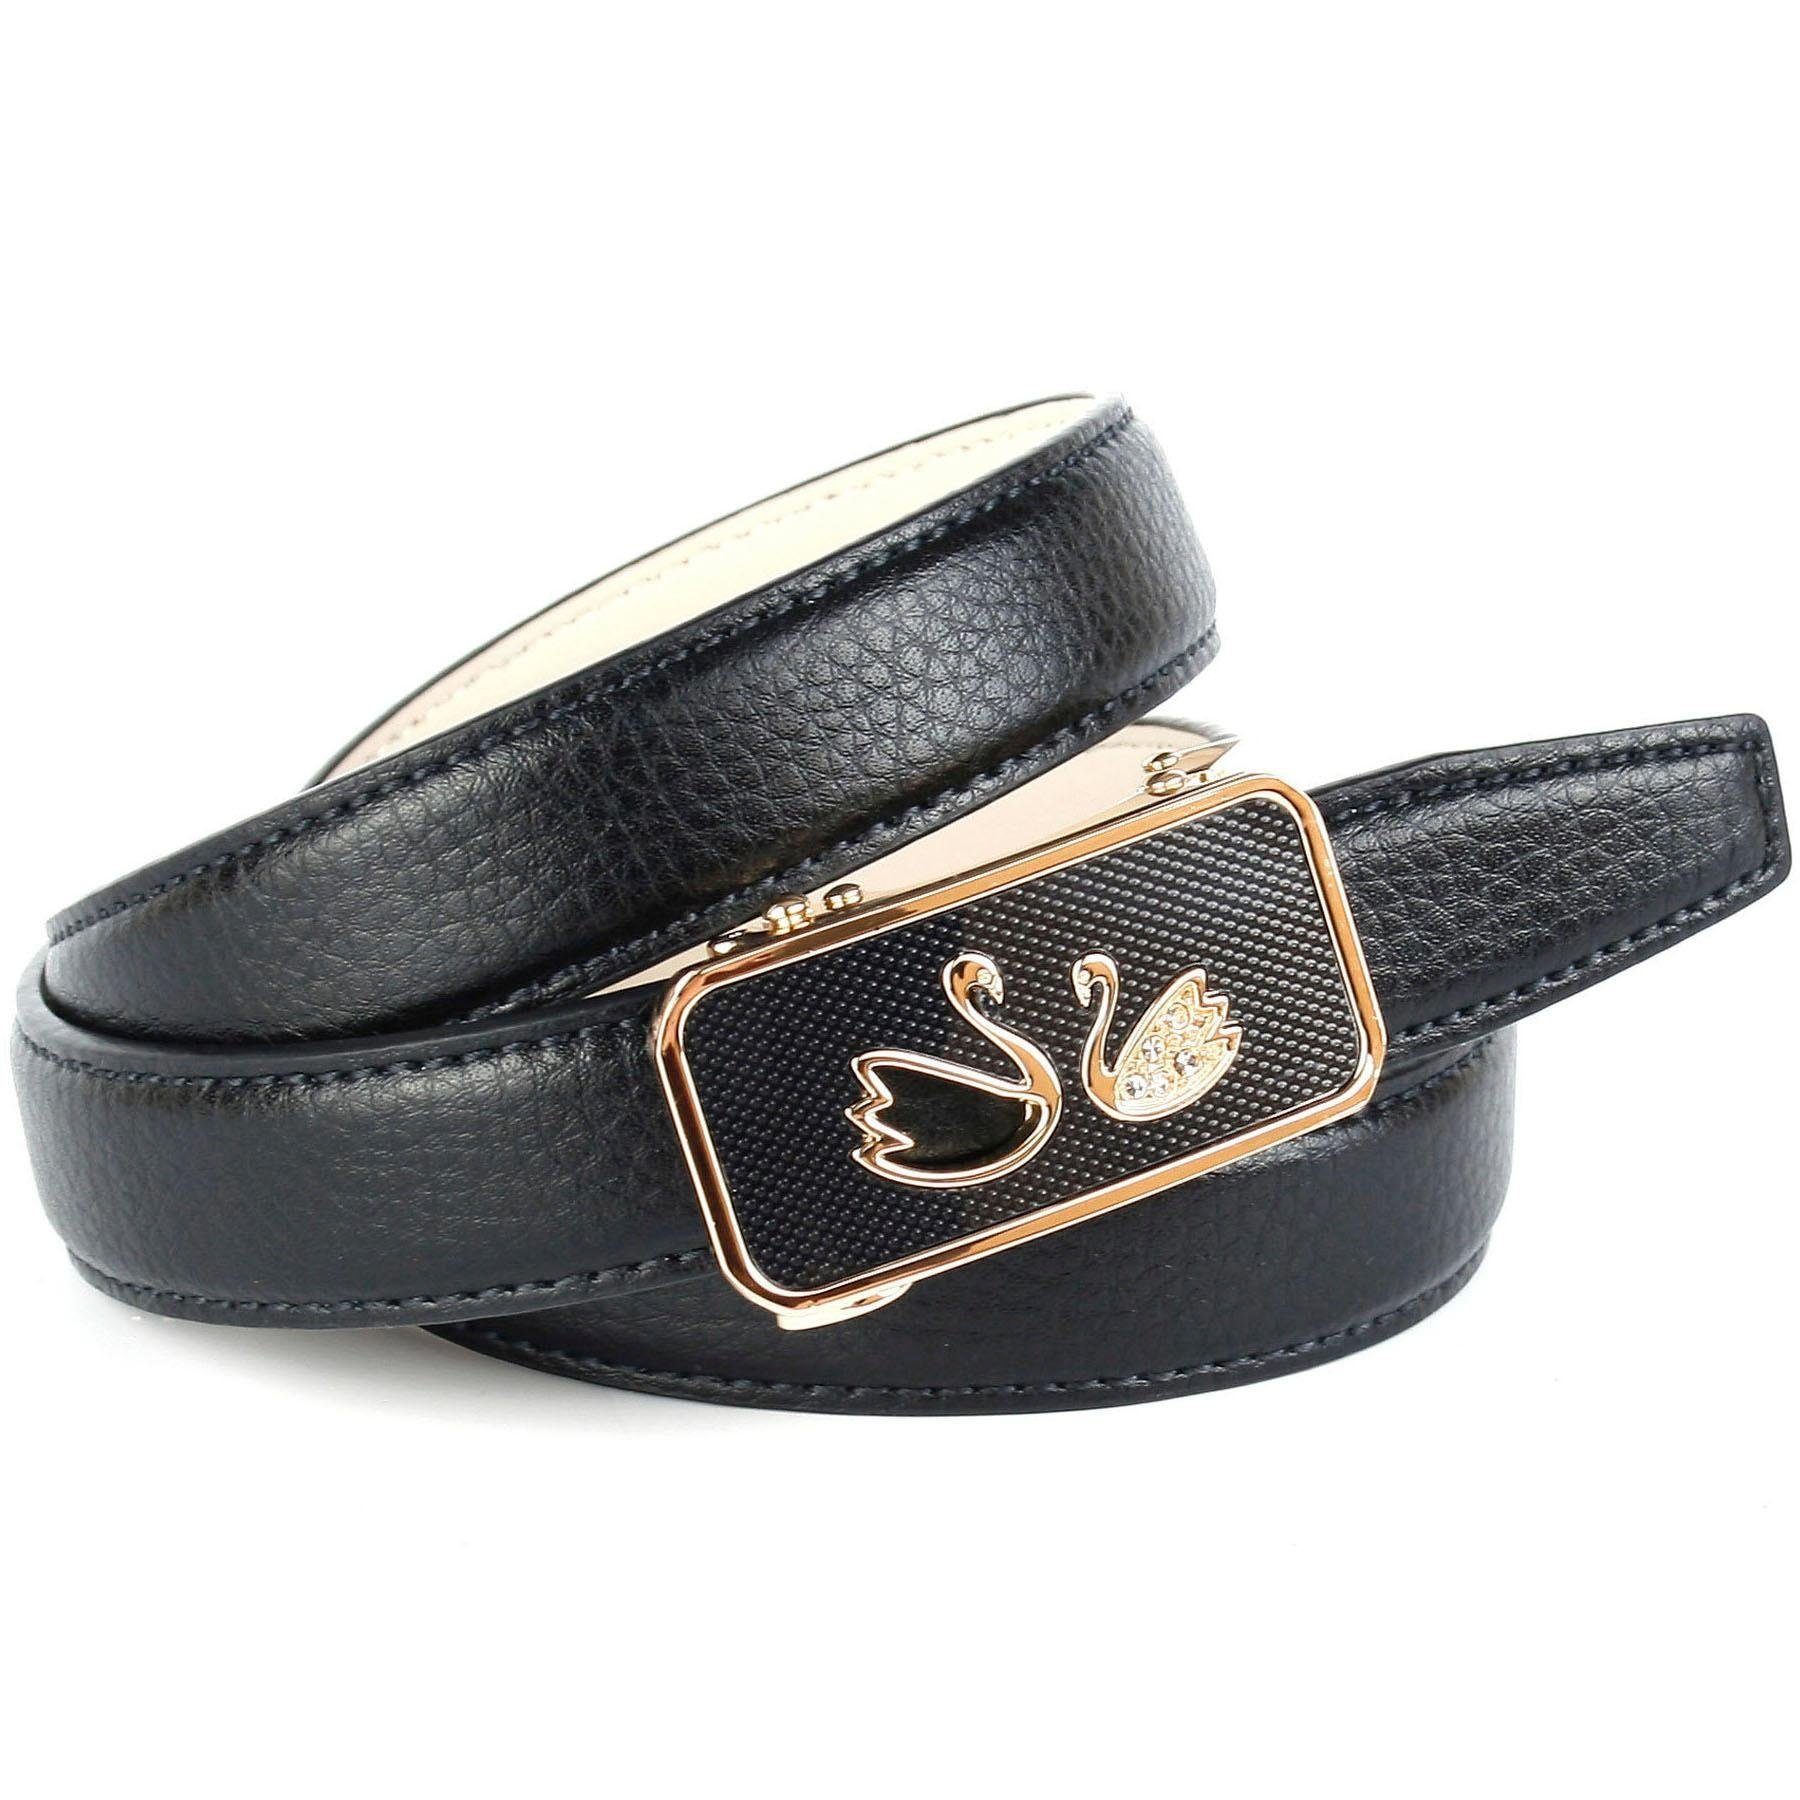 Anthoni Crown Ledergürtel in schwarz mit Automatik-Schließe, zwei Schwäne | Anzuggürtel